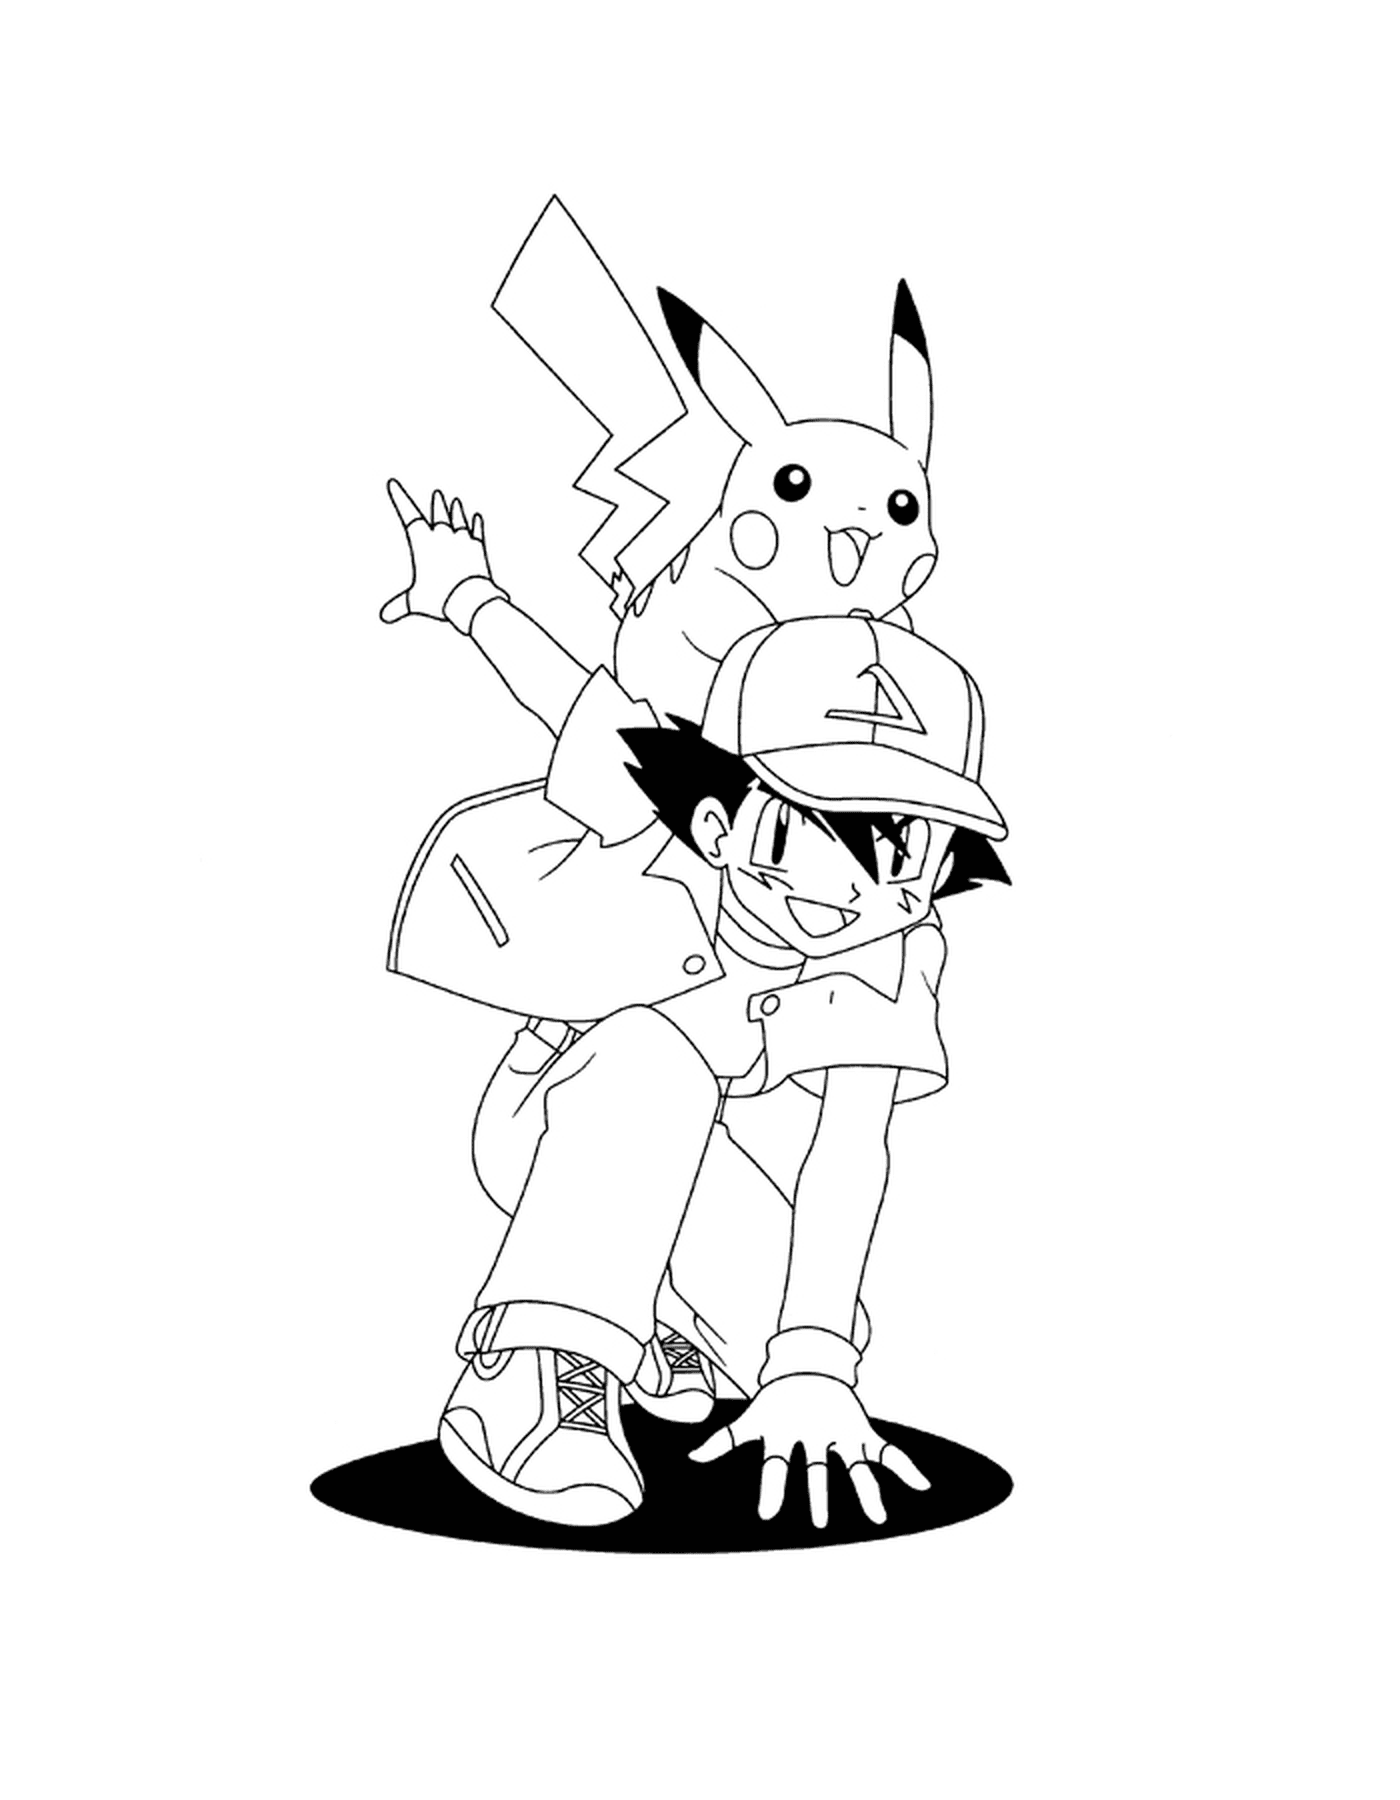  Sacha che porta Pikachu sulla schiena 